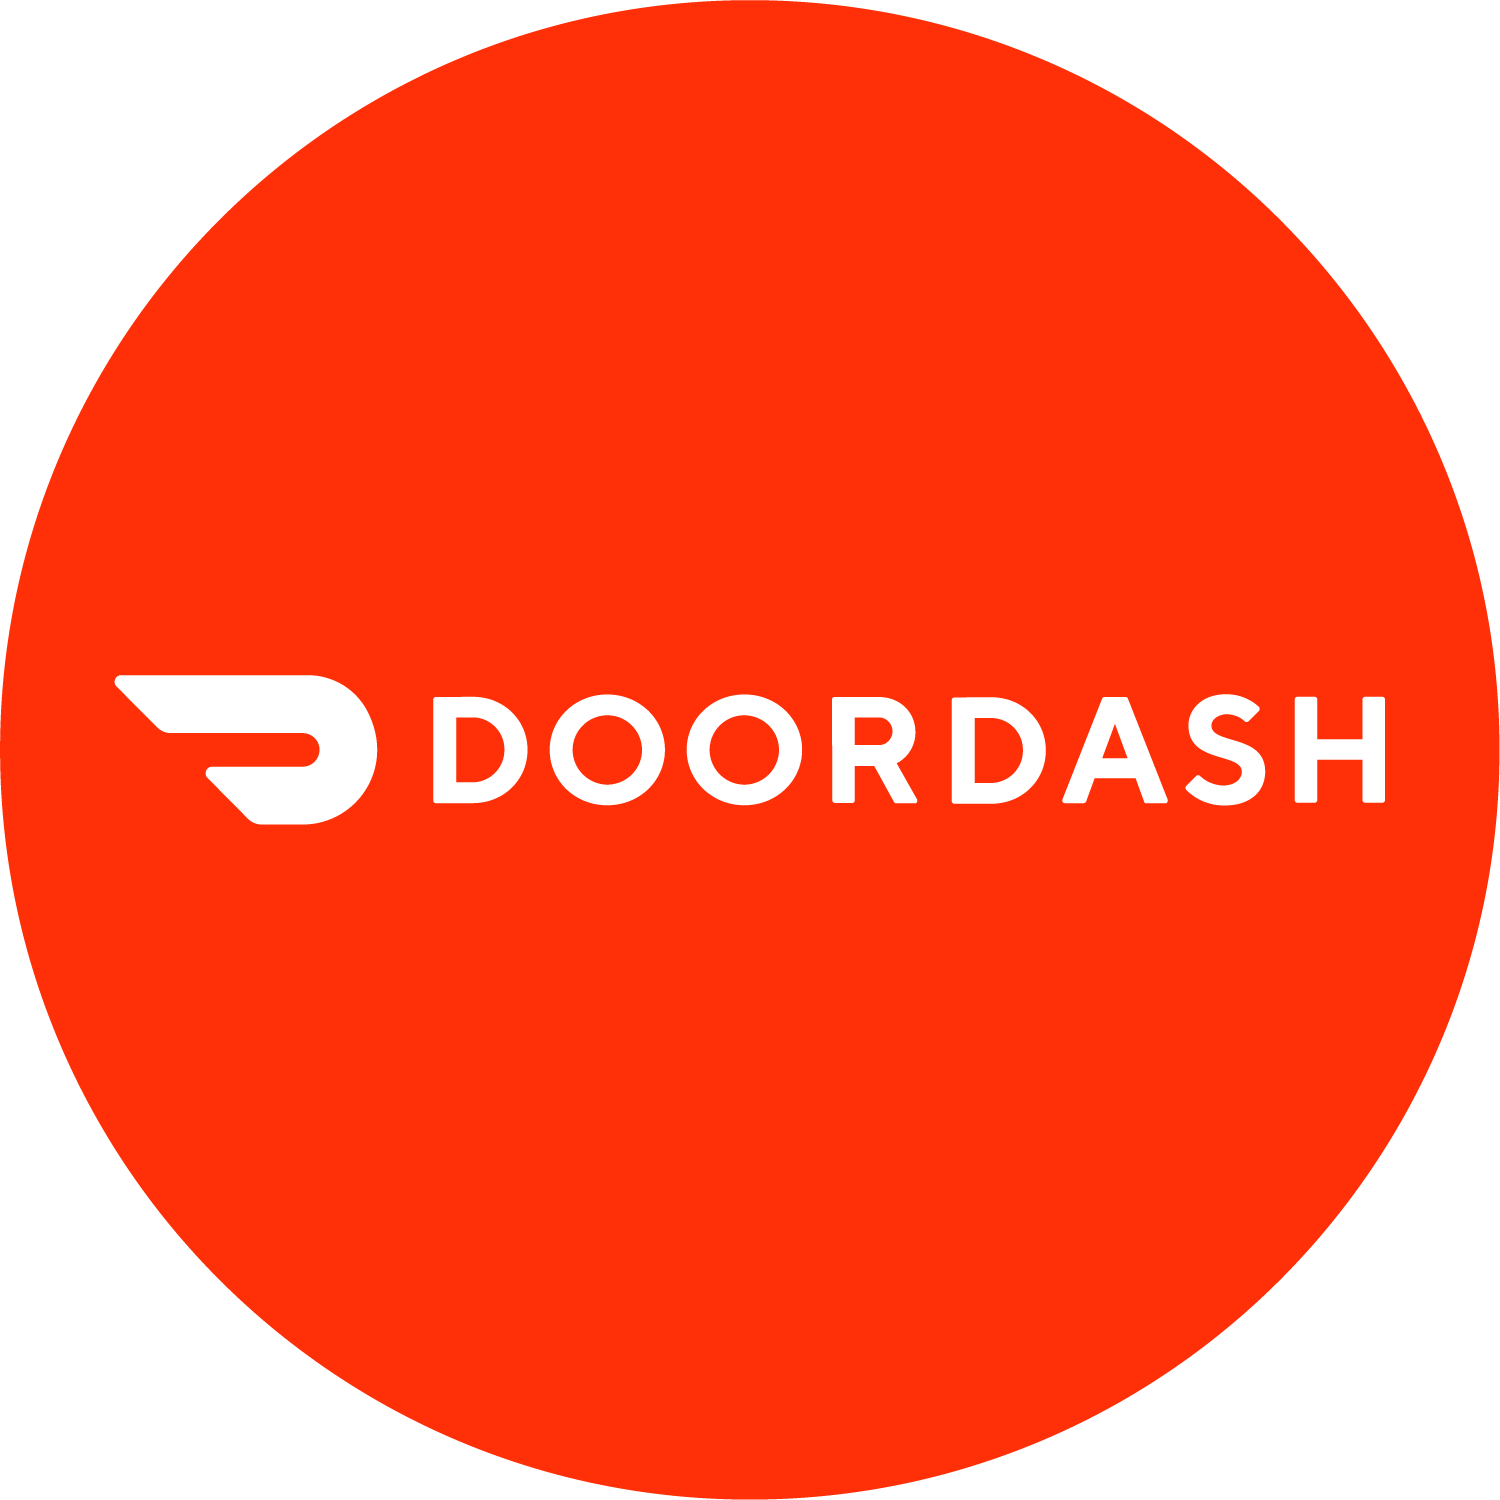 red and white doordash logo